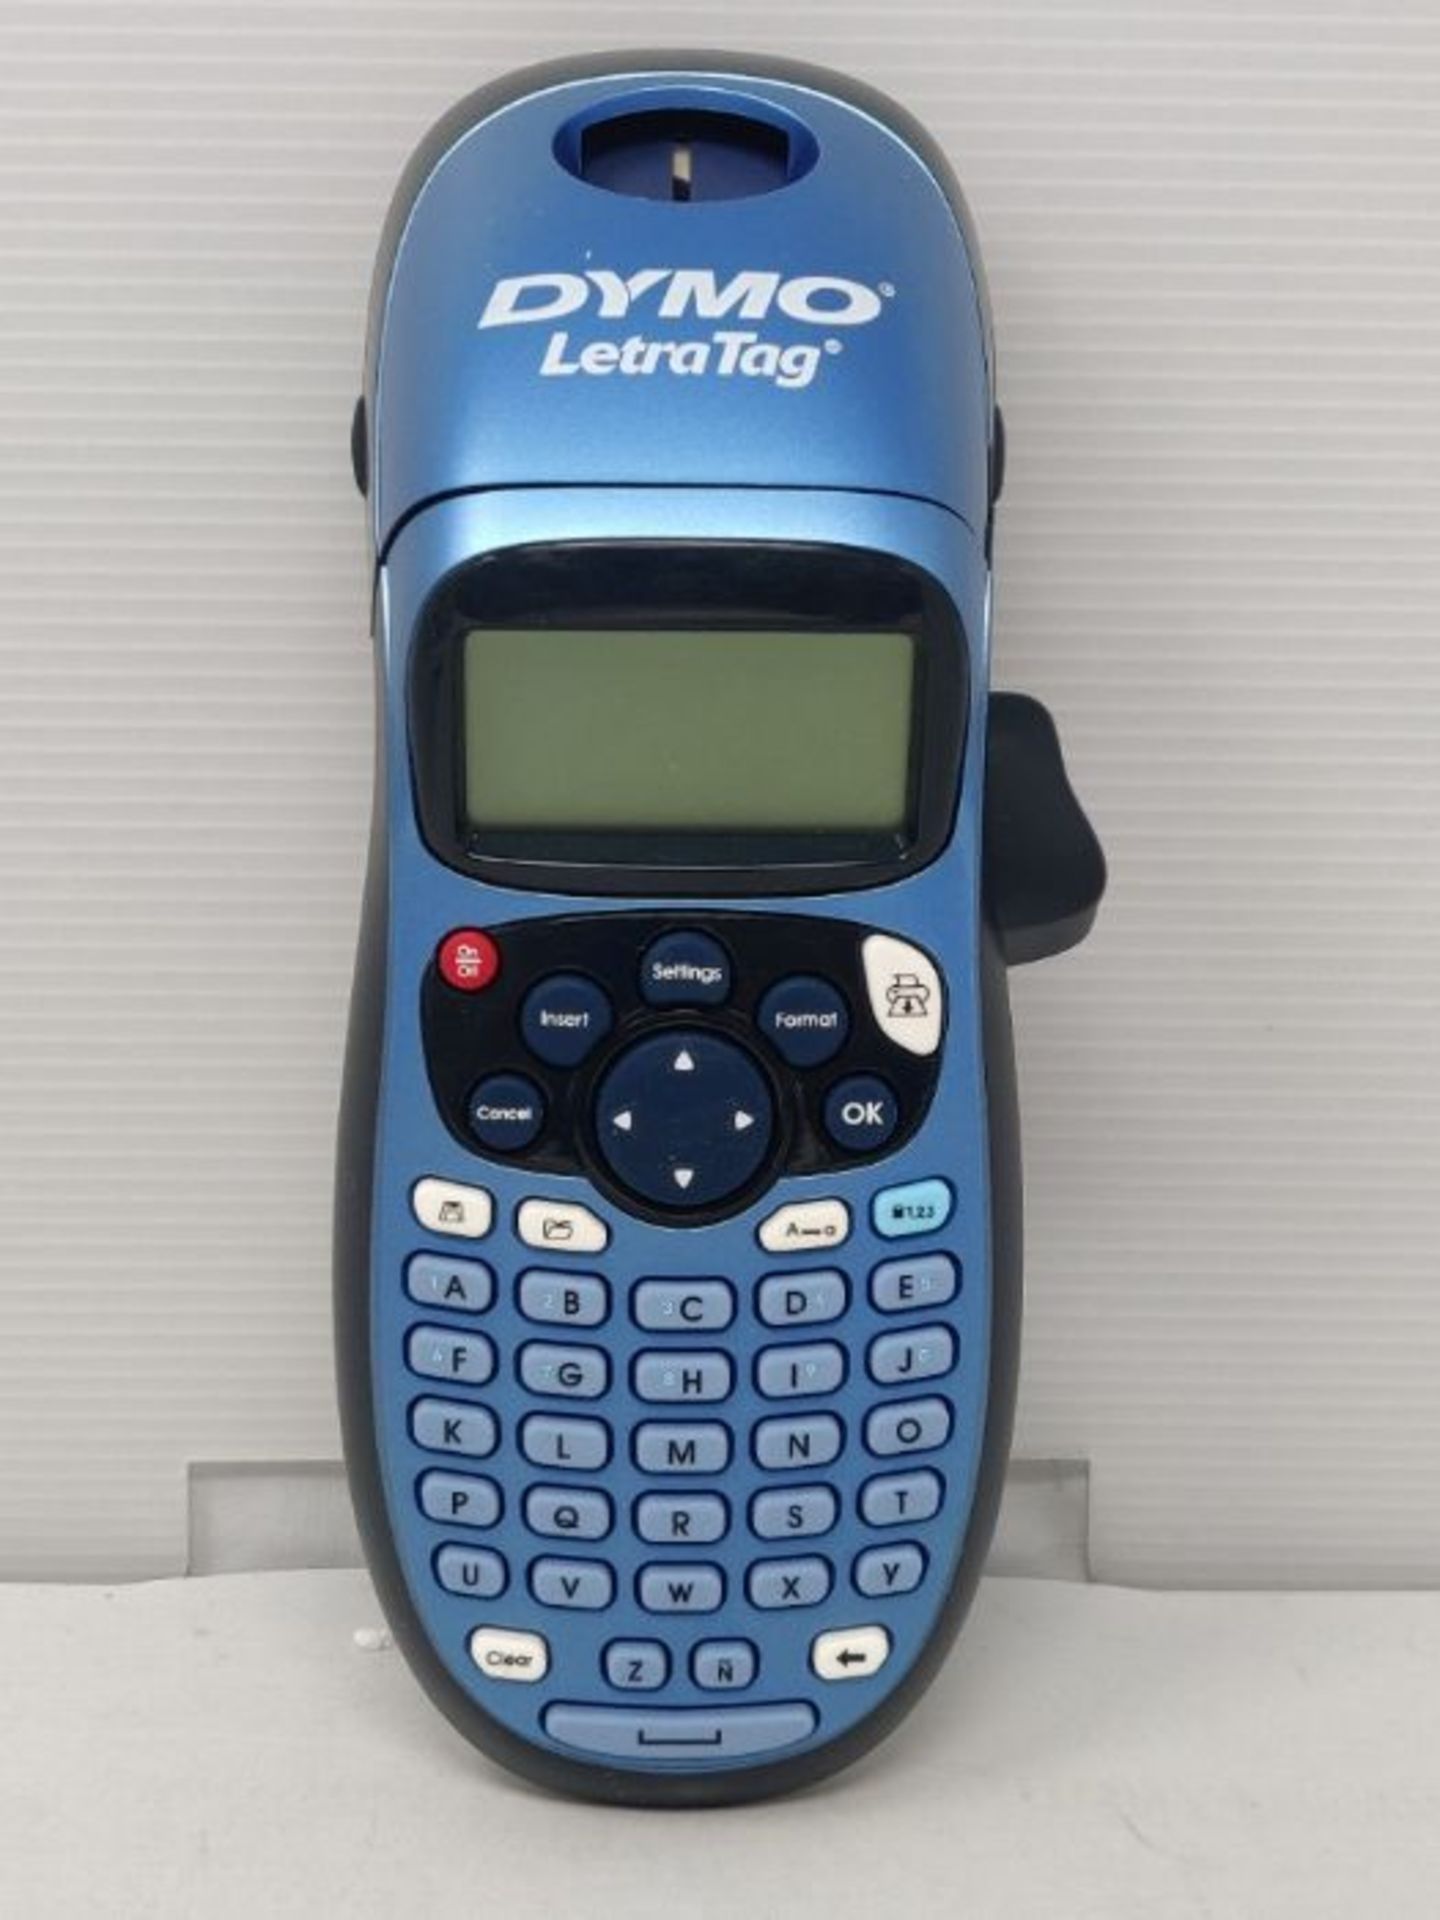 Dymo LetraTag LT-100H Label Maker | Handheld Label Maker Machine | Ideal for Office or - Image 3 of 3